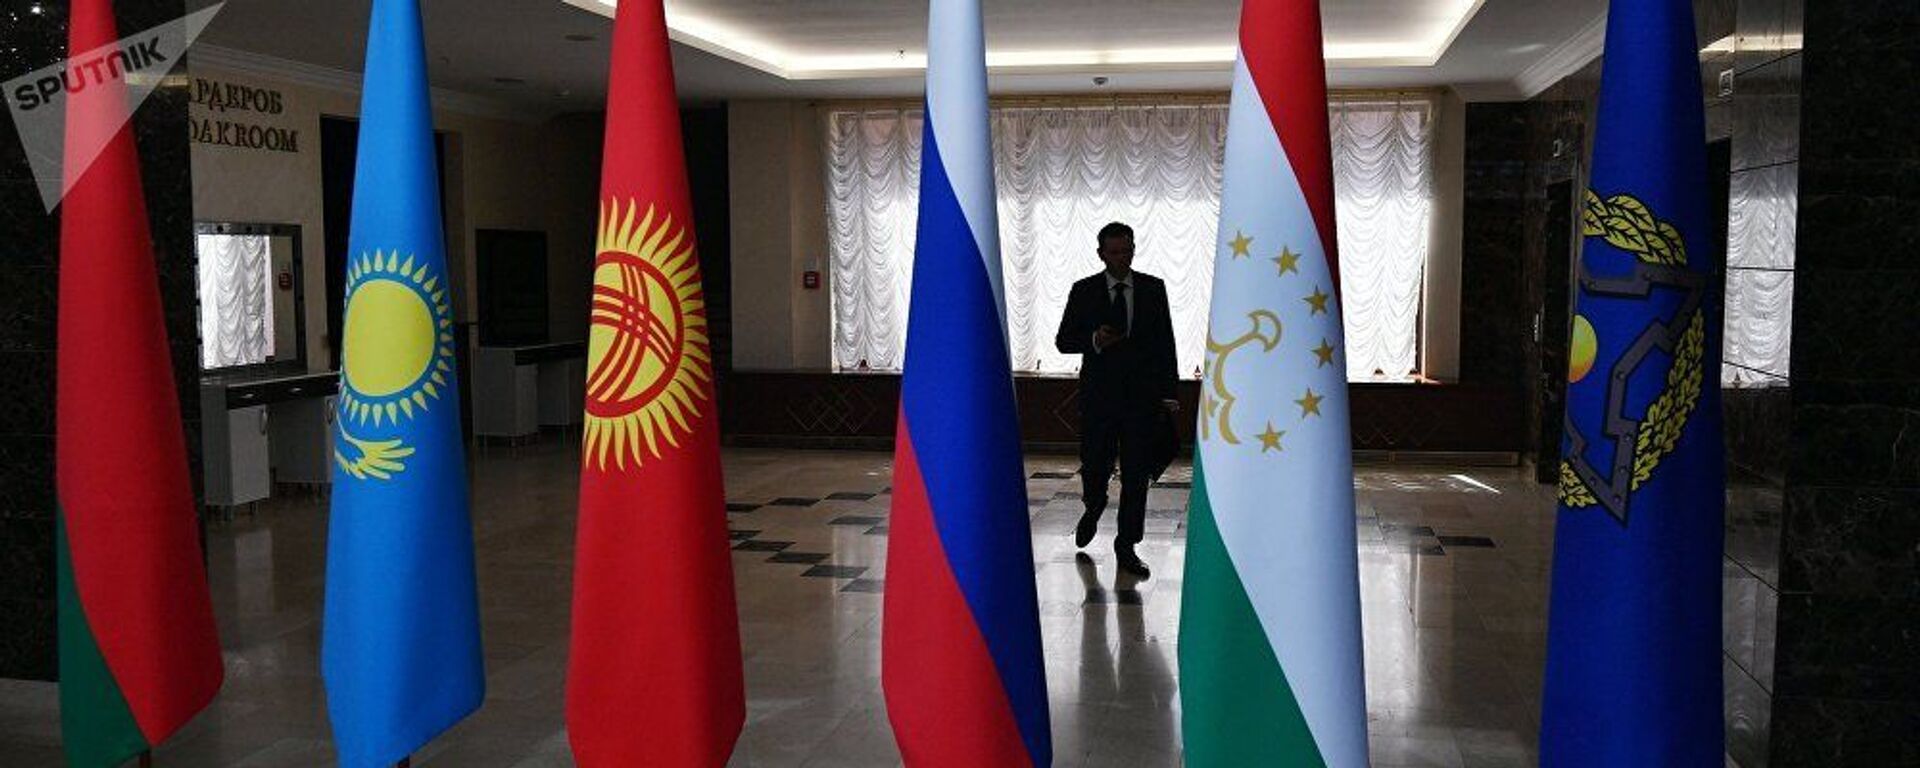 Флаги стран ОДКБ. Архивное фото - Sputnik Таджикистан, 1920, 19.05.2021